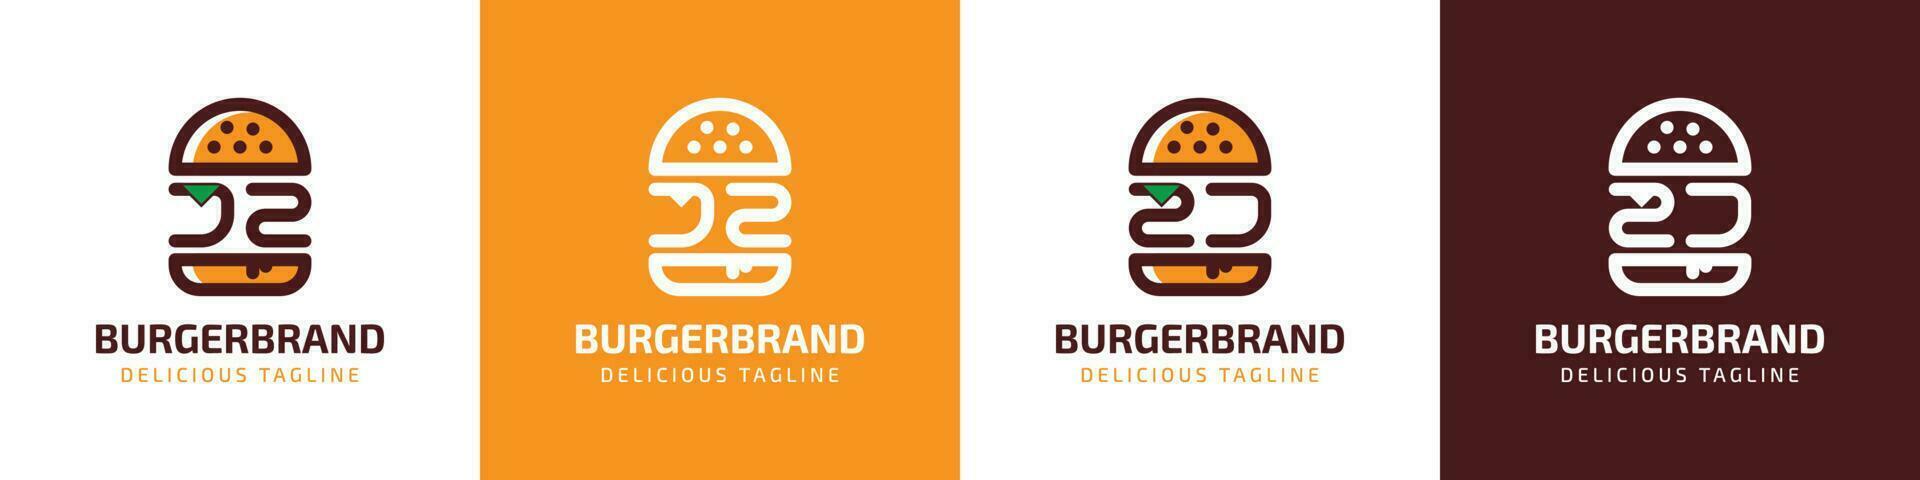 carta jz e zj hamburguer logotipo, adequado para qualquer o negócio relacionado para hamburguer com jz ou zj iniciais. vetor